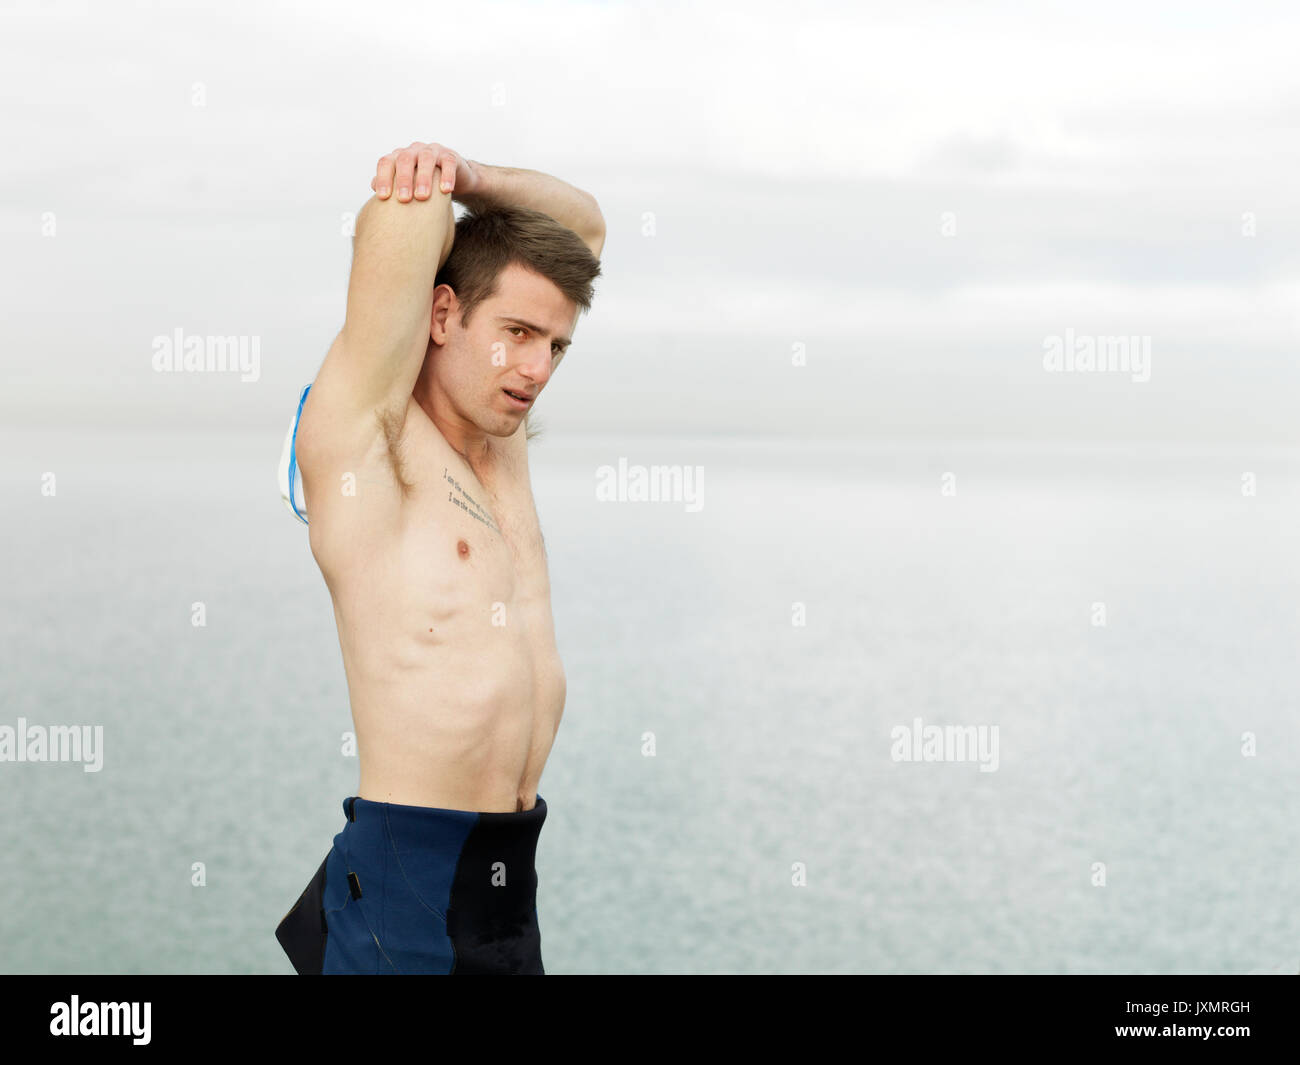 Bare chested Mann aufwärmen, Stretching Arms, Melbourne, Victoria, Australien, Ozeanien Stockfoto